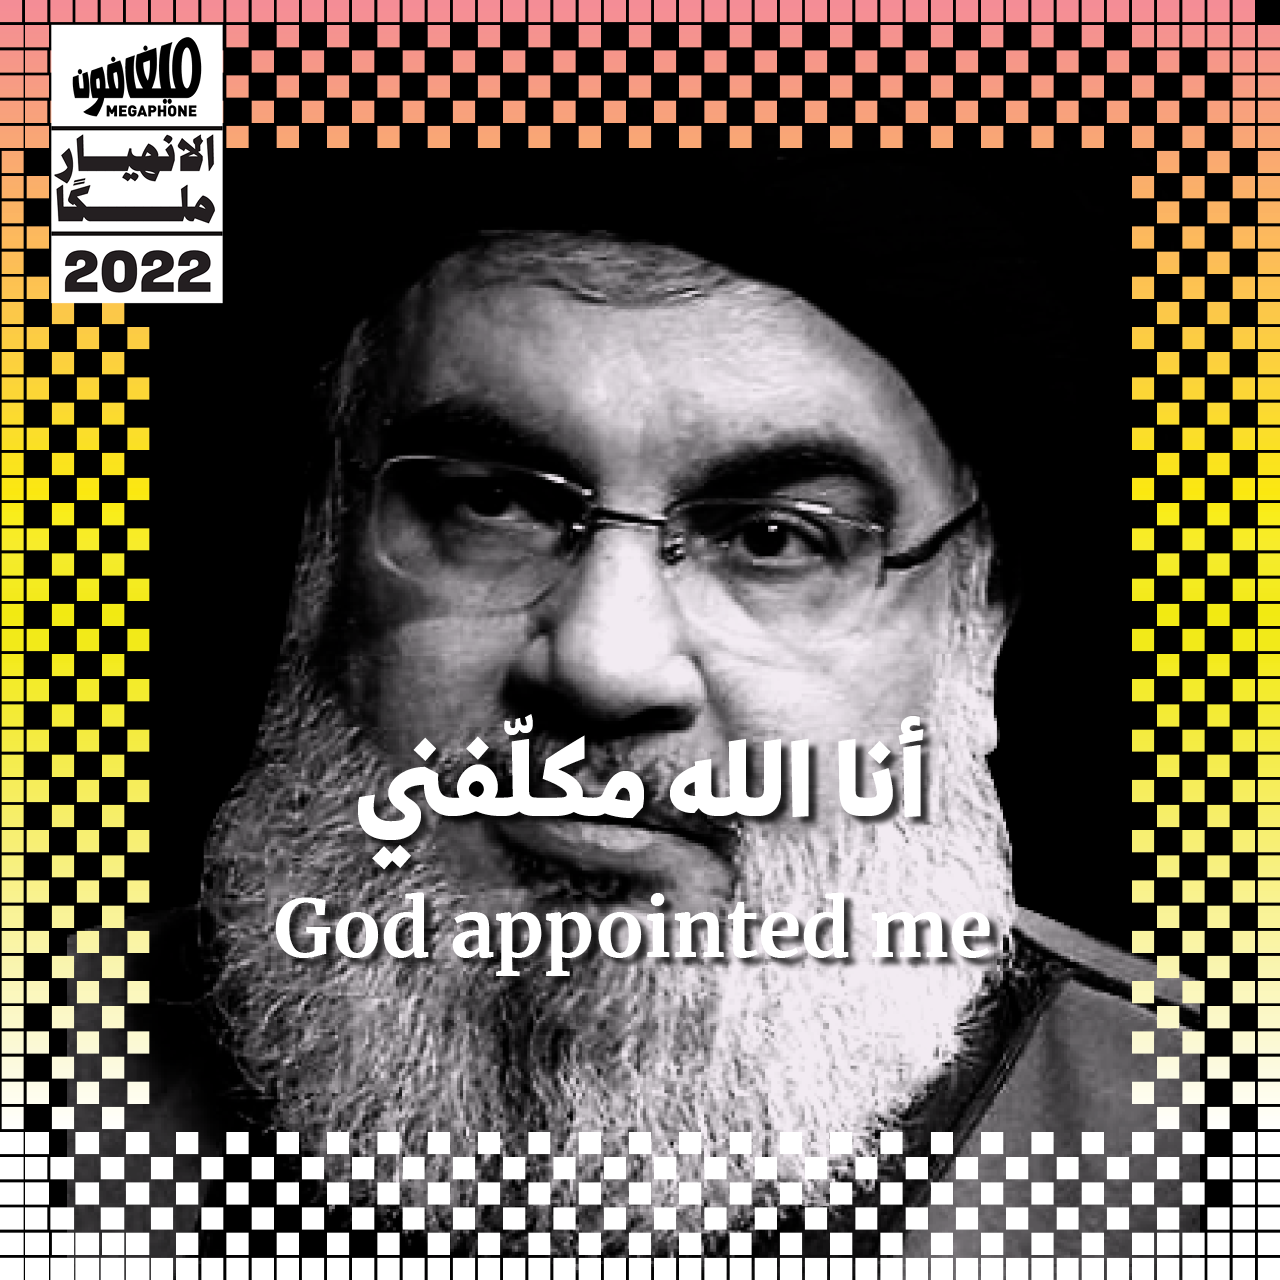 نصرالله 2022: أنا الله مكلّفني